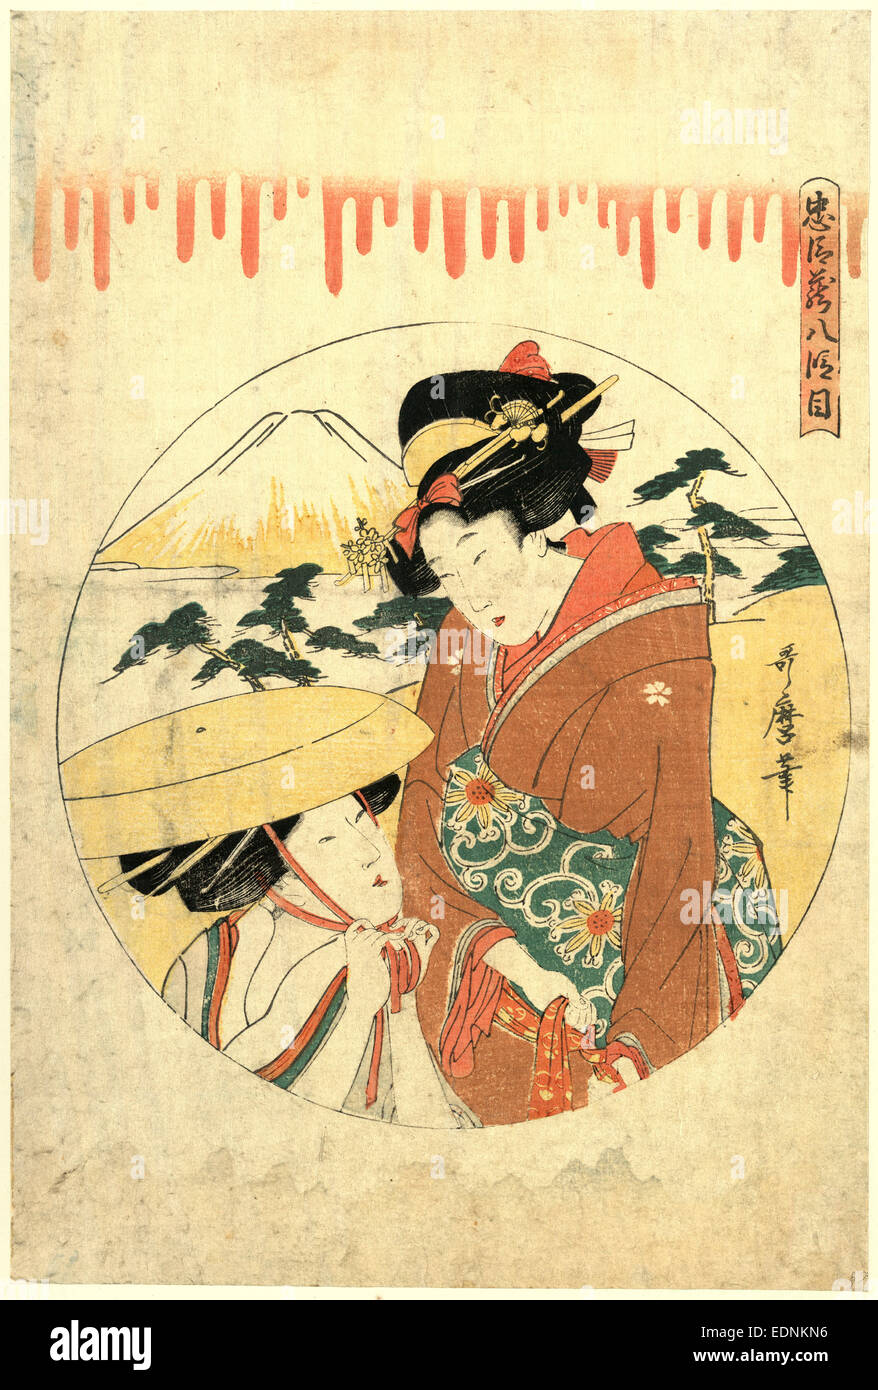 Hachidanme, Acte 8 [du]. Chushingura, Kitagawa Utamaro, 1753 ?-1806, artiste, [entre 1799 et 1801], 1 tirage : gravure sur bois, couleur ; 34,2 x 23,1 cm., imprimer montre deux femmes (l'un probablement sur son voyage de noce de Konami de Rikiya's home) dans un cadre paysager avec le Mont Fuji en arrière-plan. Banque D'Images